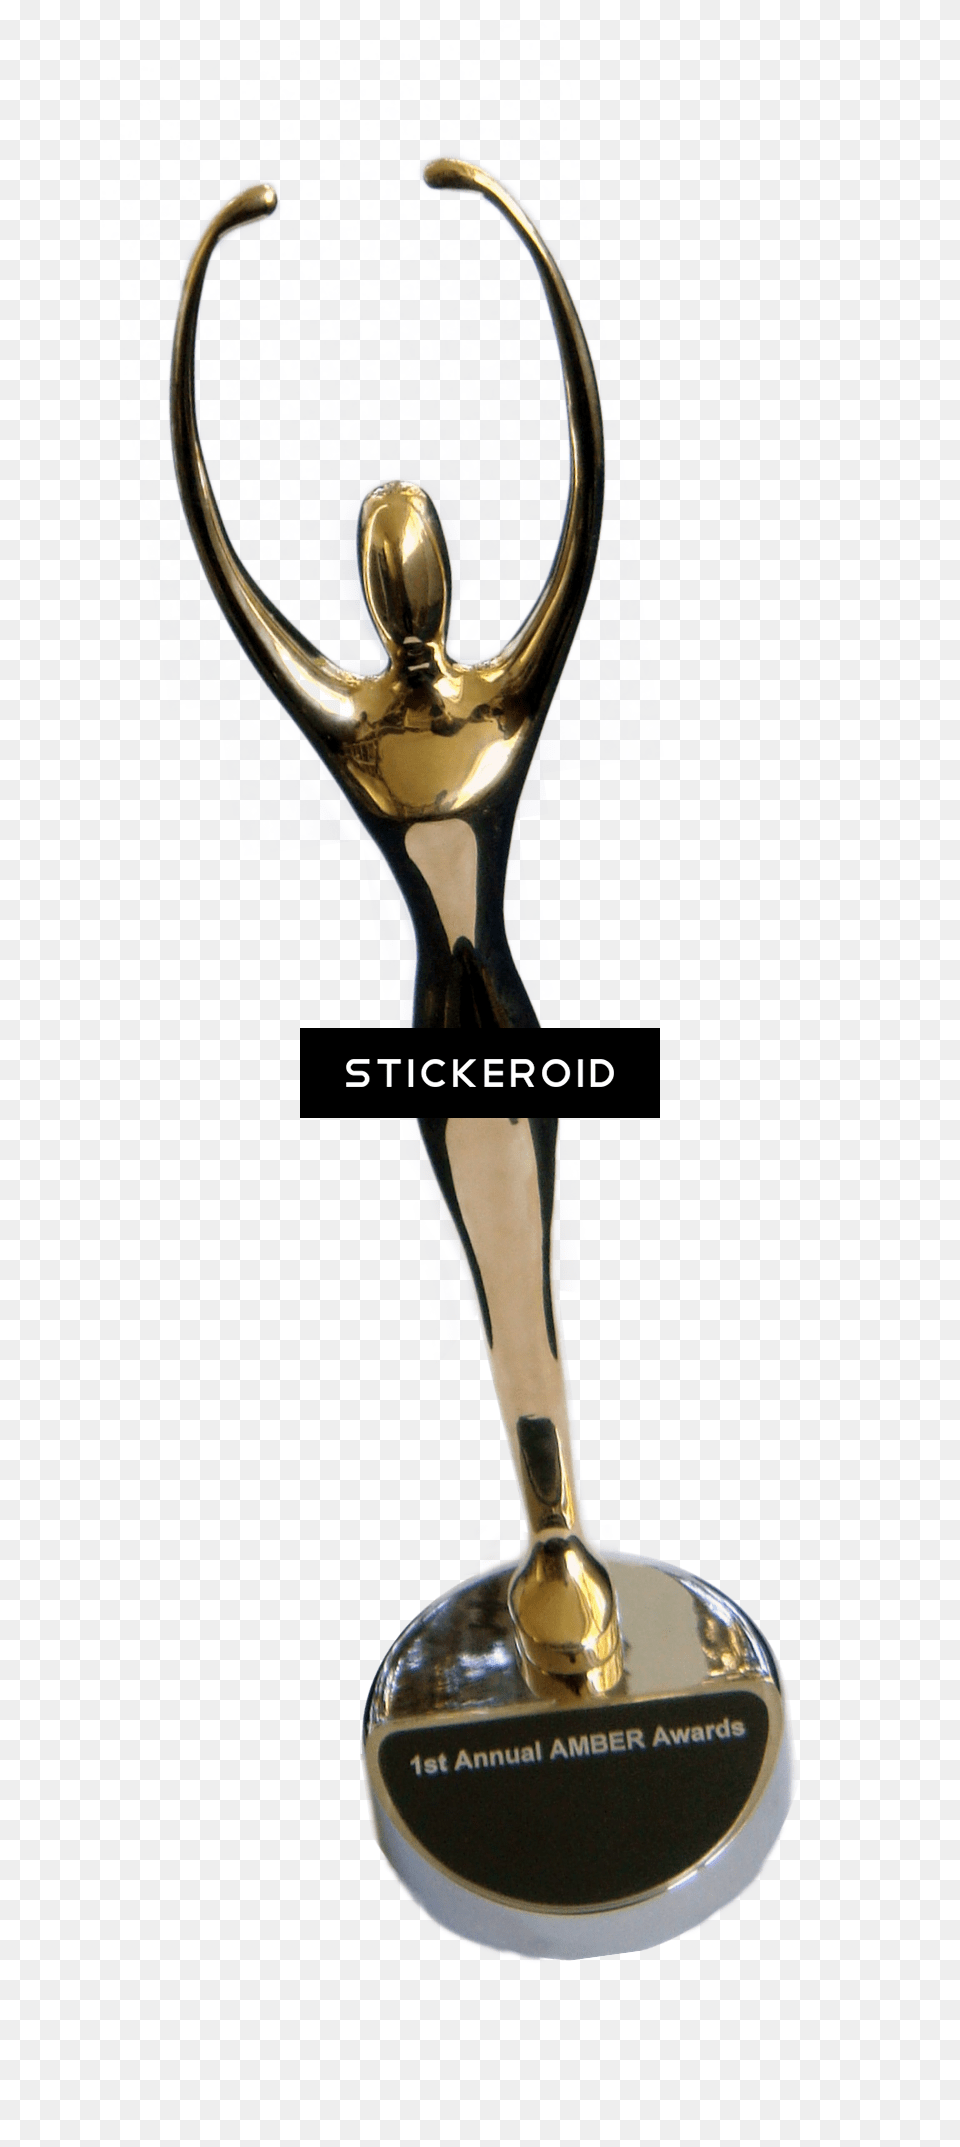 Award Image, Trophy, Smoke Pipe Free Png